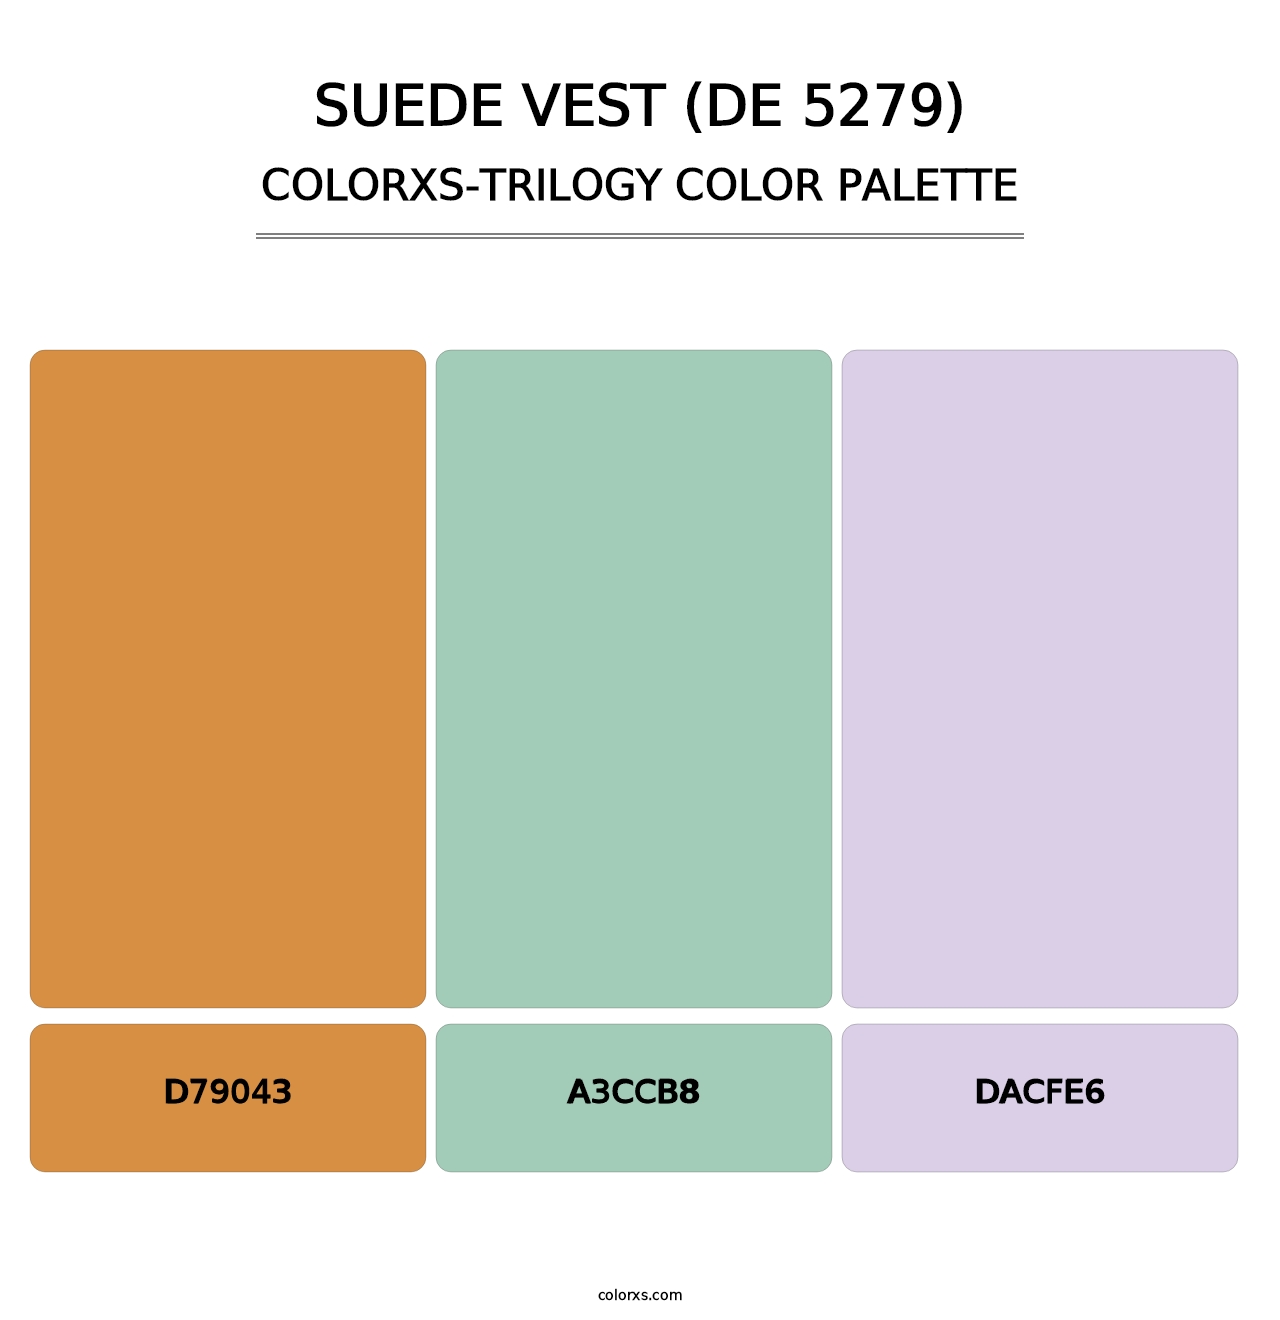 Suede Vest (DE 5279) - Colorxs Trilogy Palette